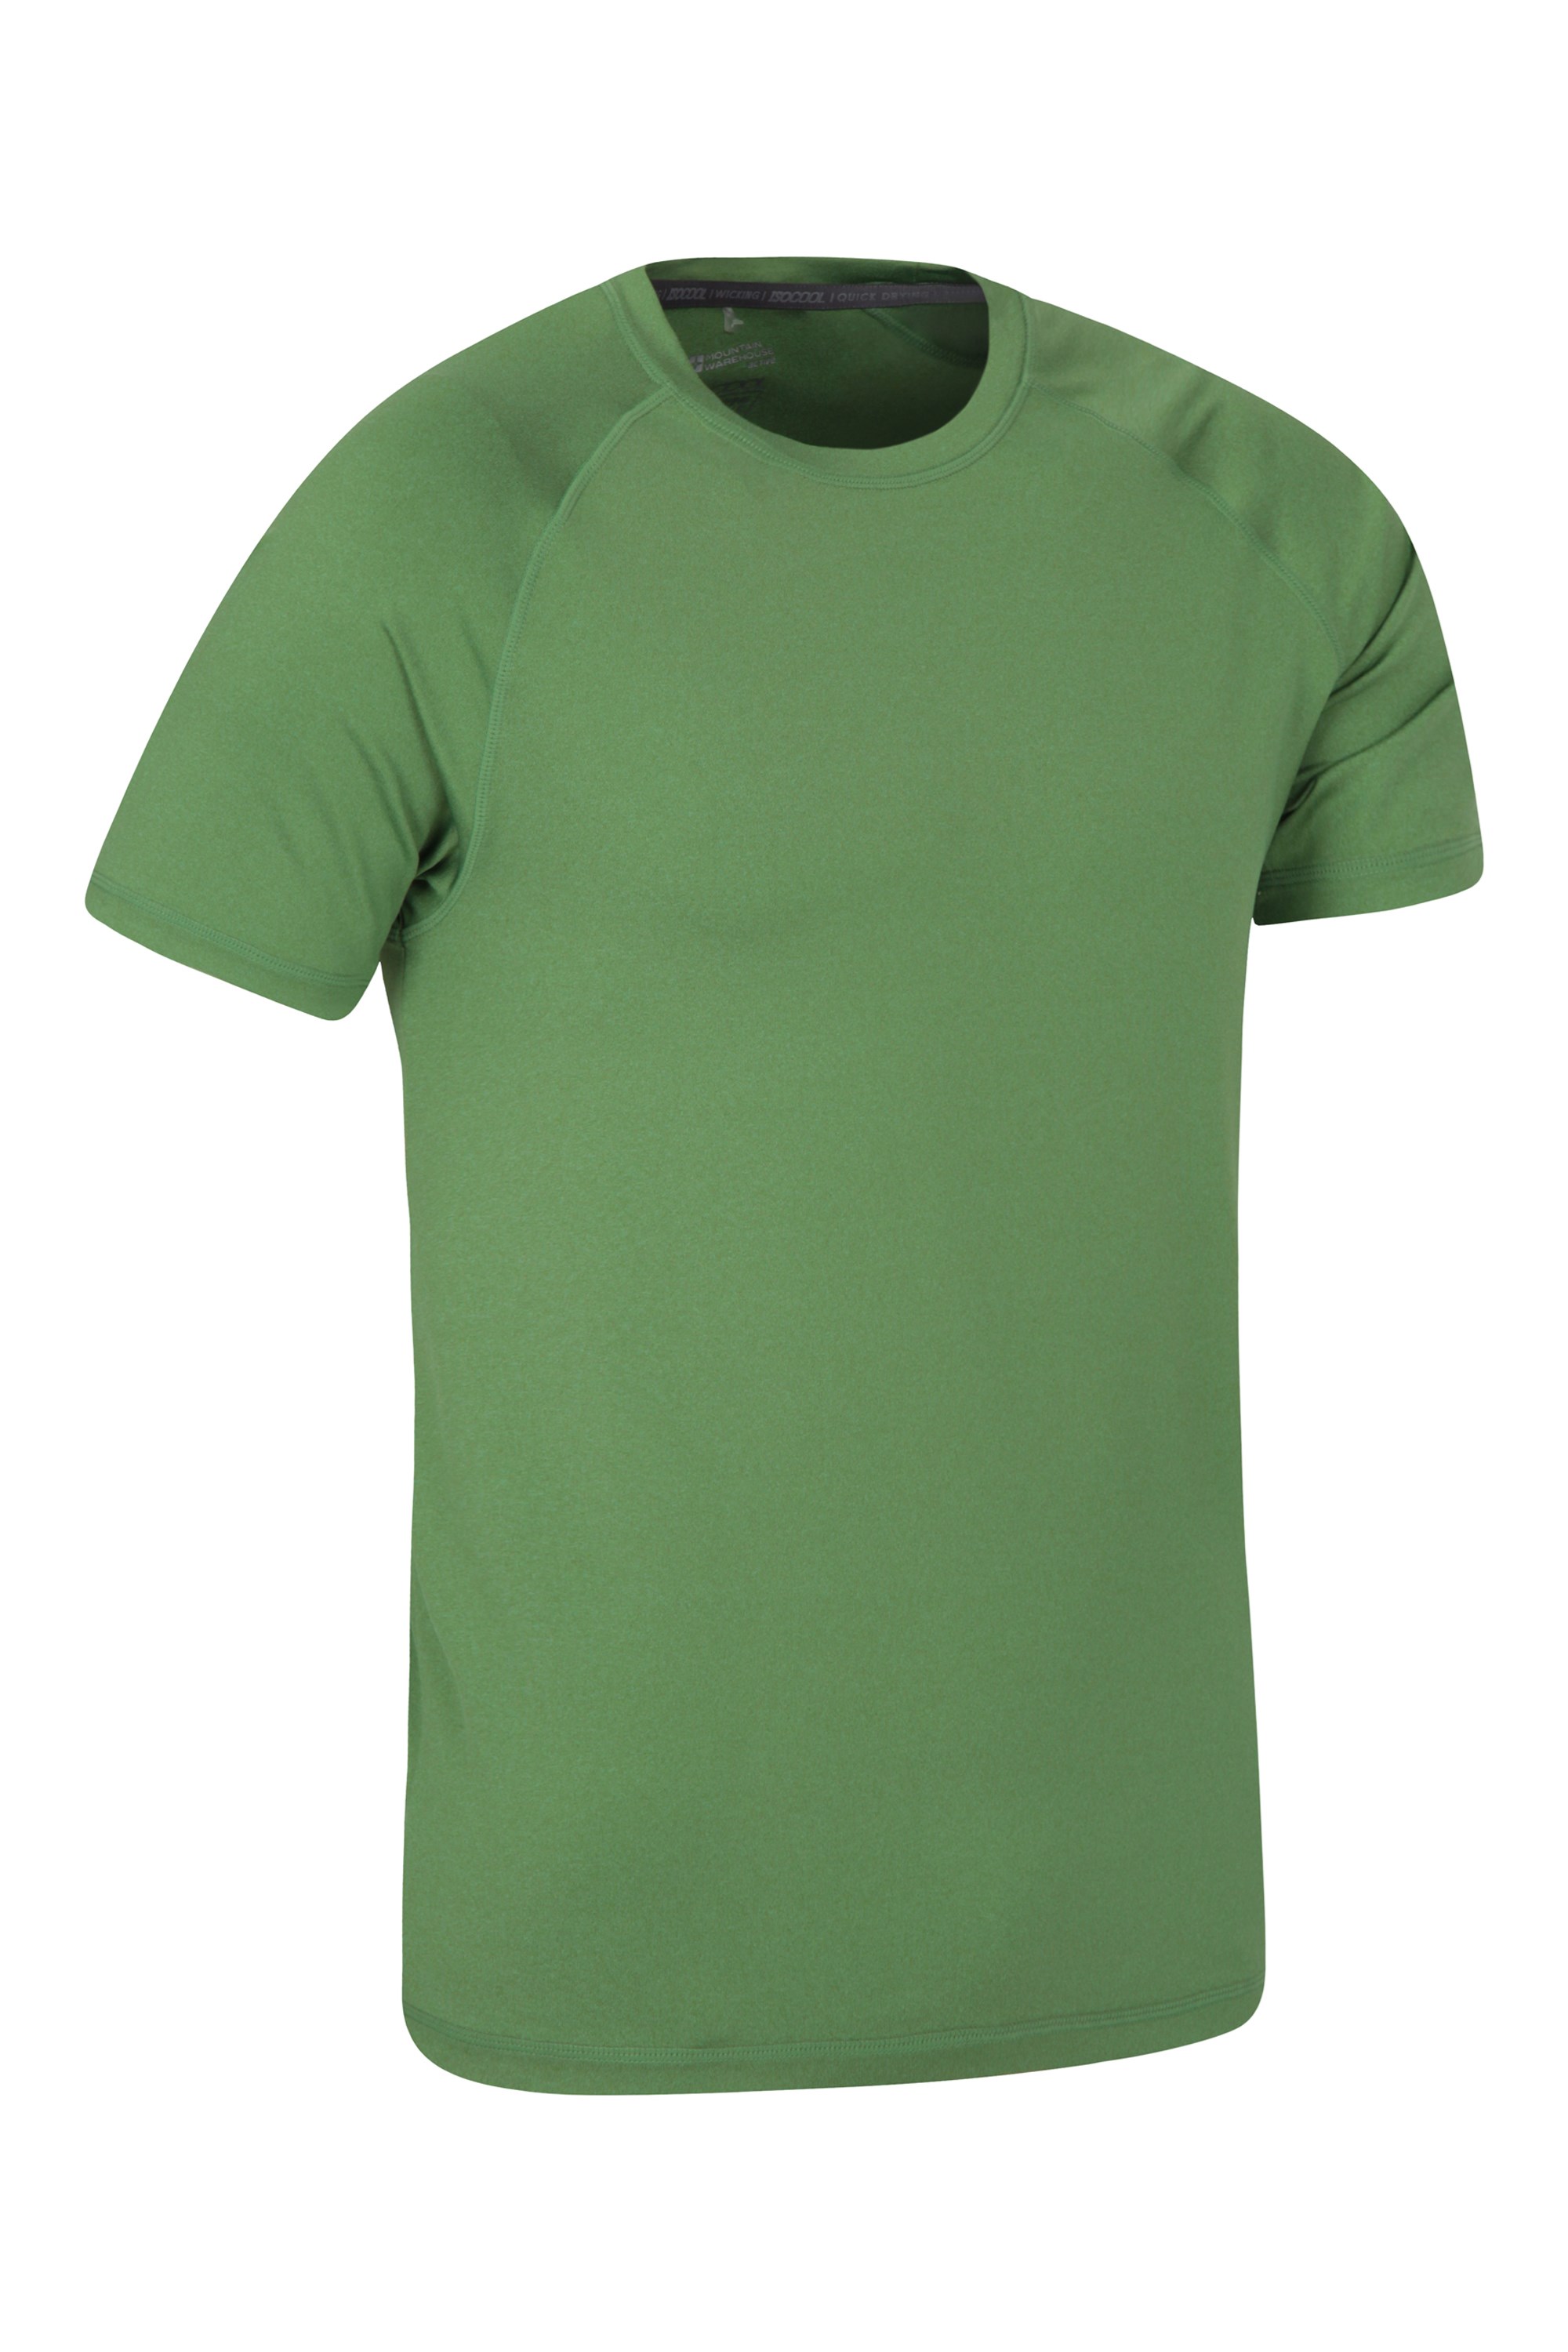 Mountain Warehouse T di IsoCool della banda di Agra camicia leggera di estate Tshirt UV di protezione UPF30 rapidamente asciutta Breathable altamente Wicking 